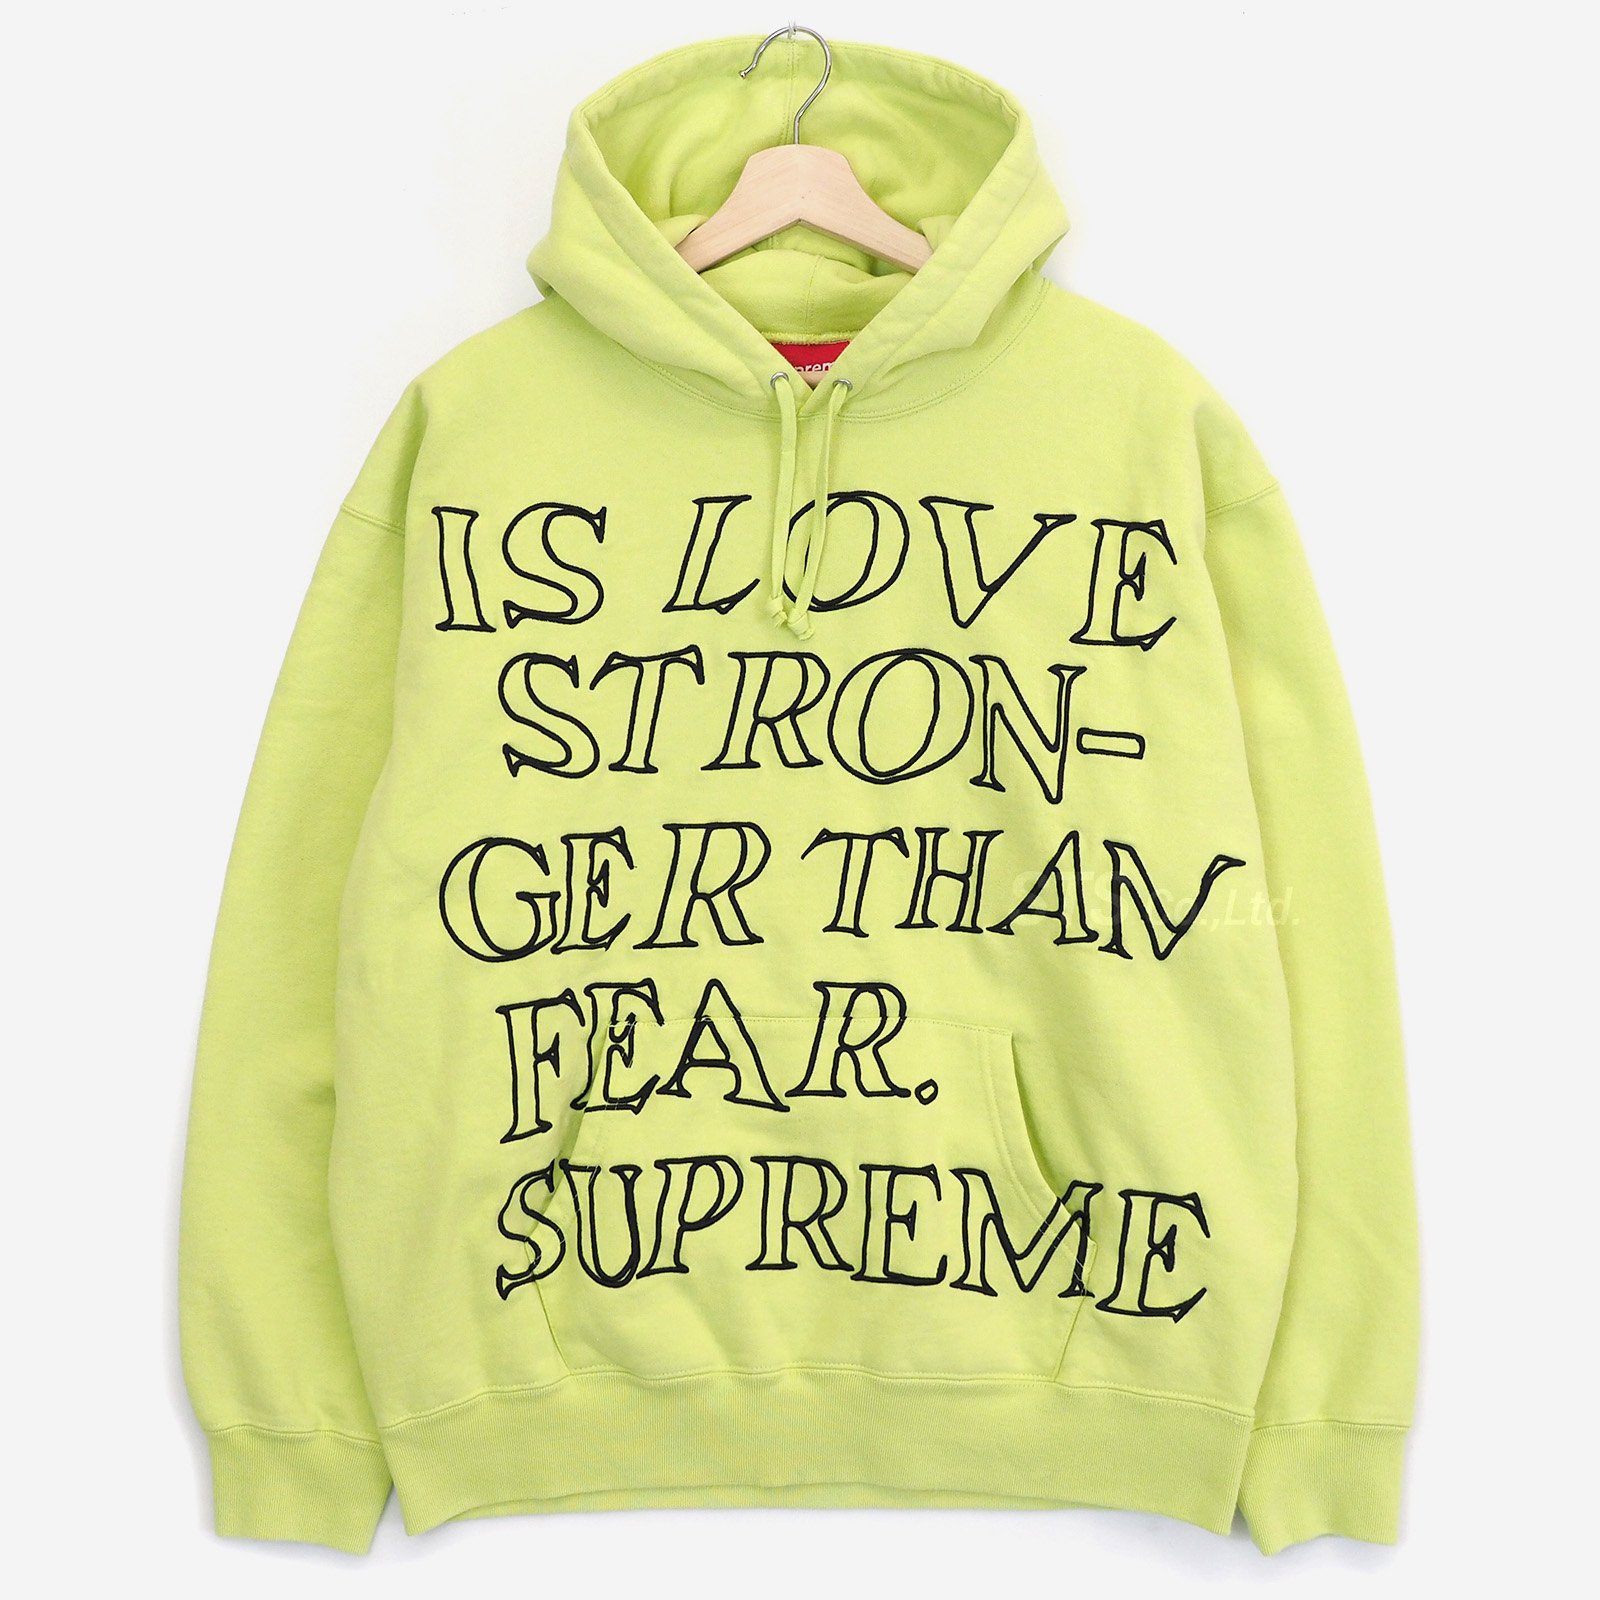 Supreme Stronger Hooded Sweatshirt XL